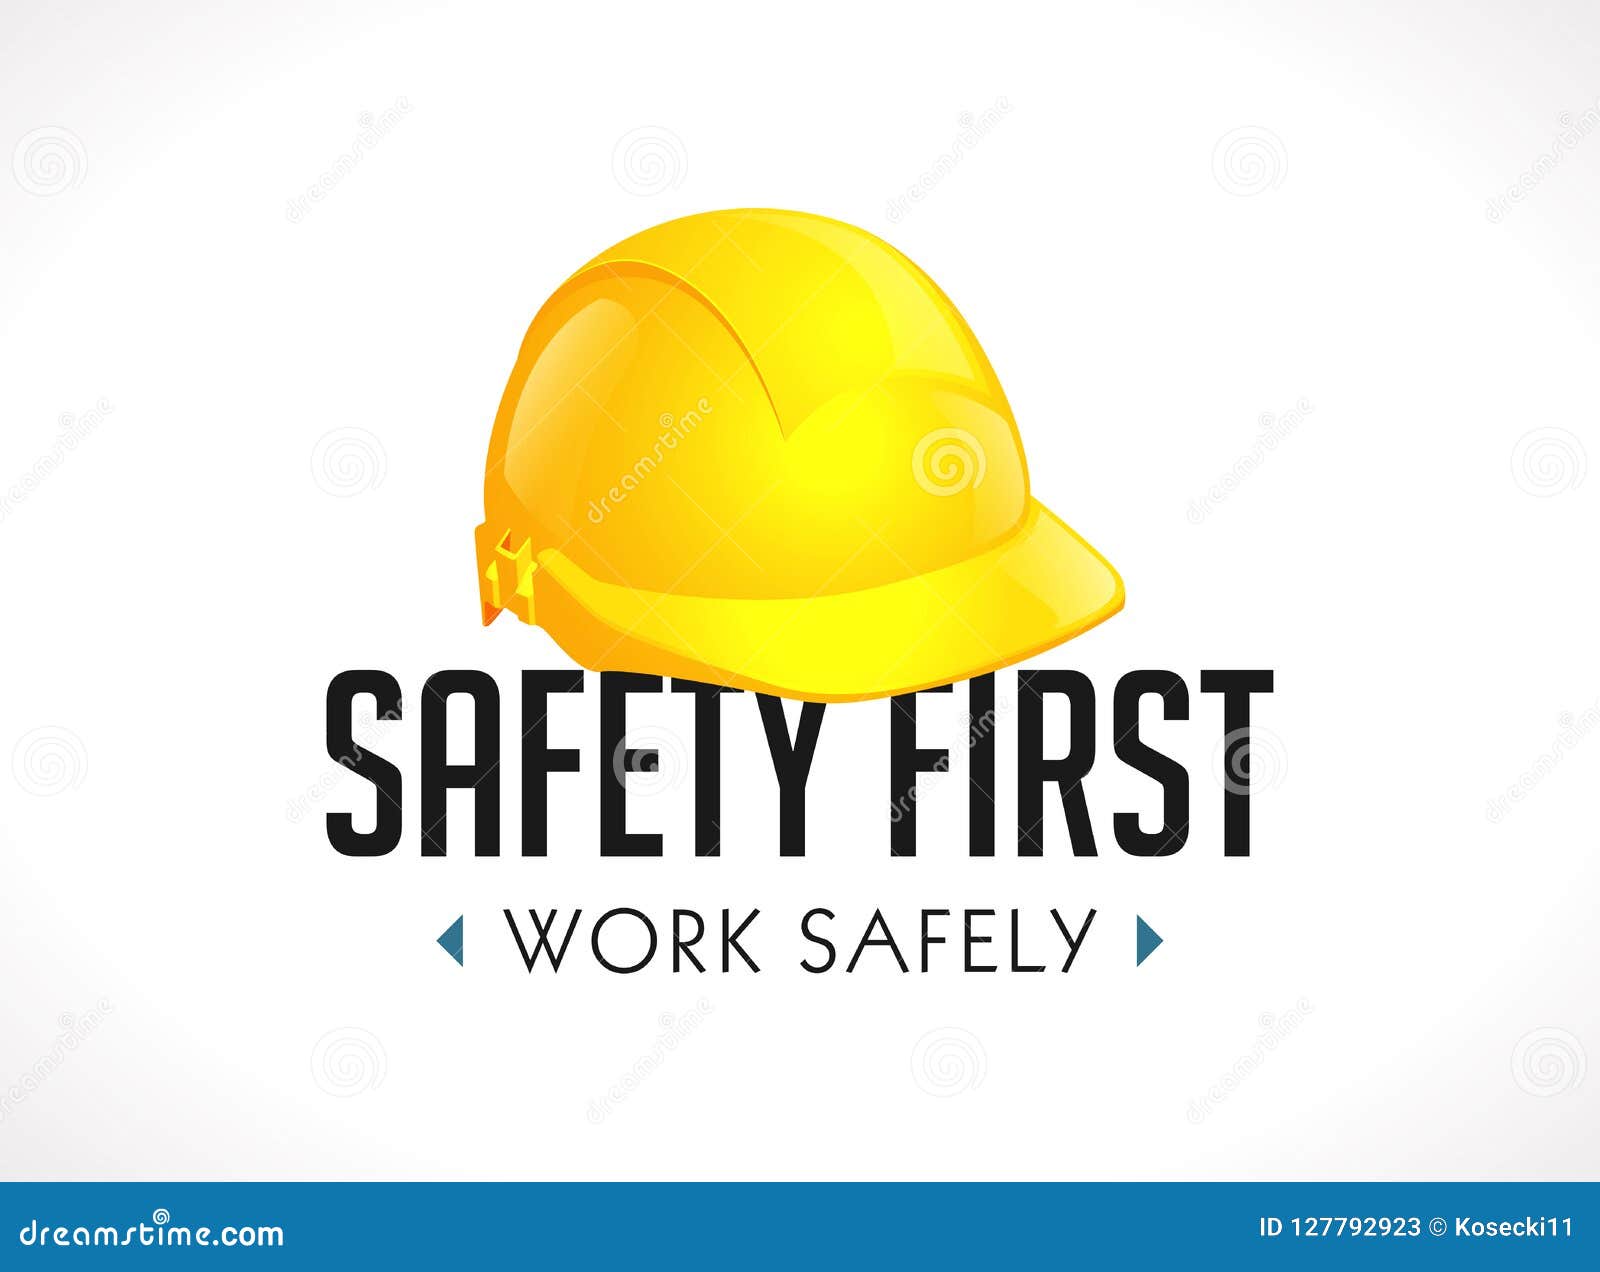 Primo concetto della sicurezza - lavori sicuro il casco giallo del segno come segnale di pericolo. Primo concetto della sicurezza - lavori sicuro il casco giallo del segno come signn d'avvertimento